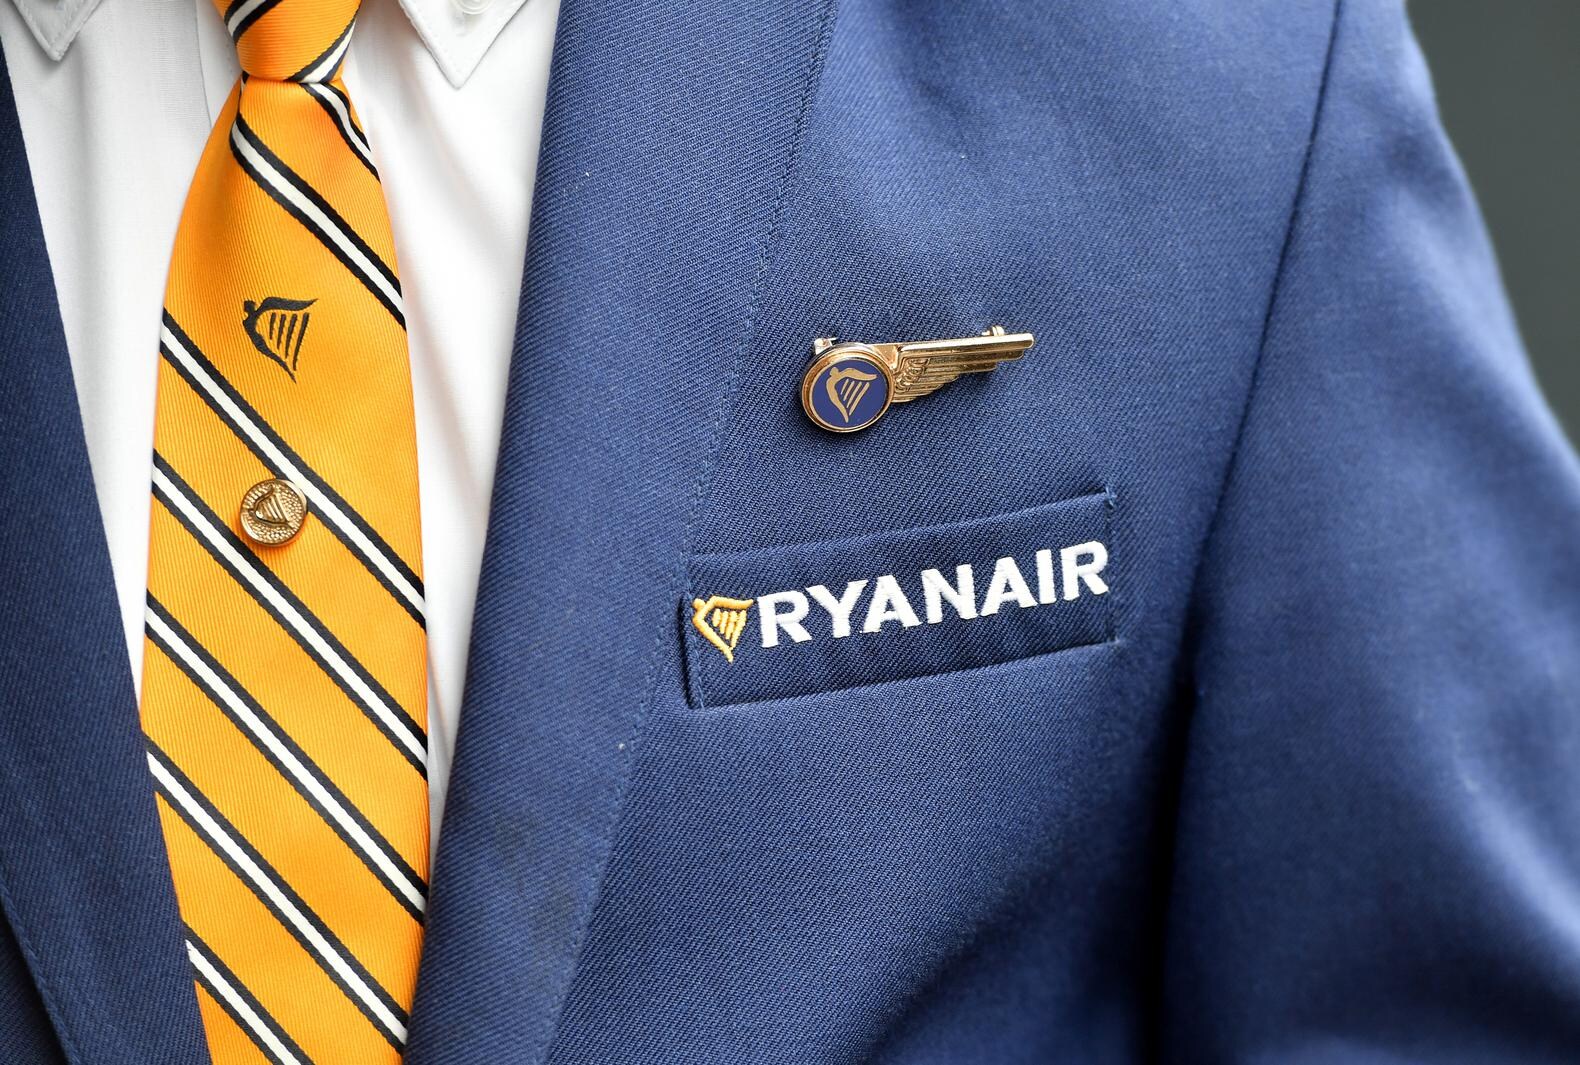 Personeel over cultuur Ryanair: 'Het lijkt hier Noord-Korea wel'